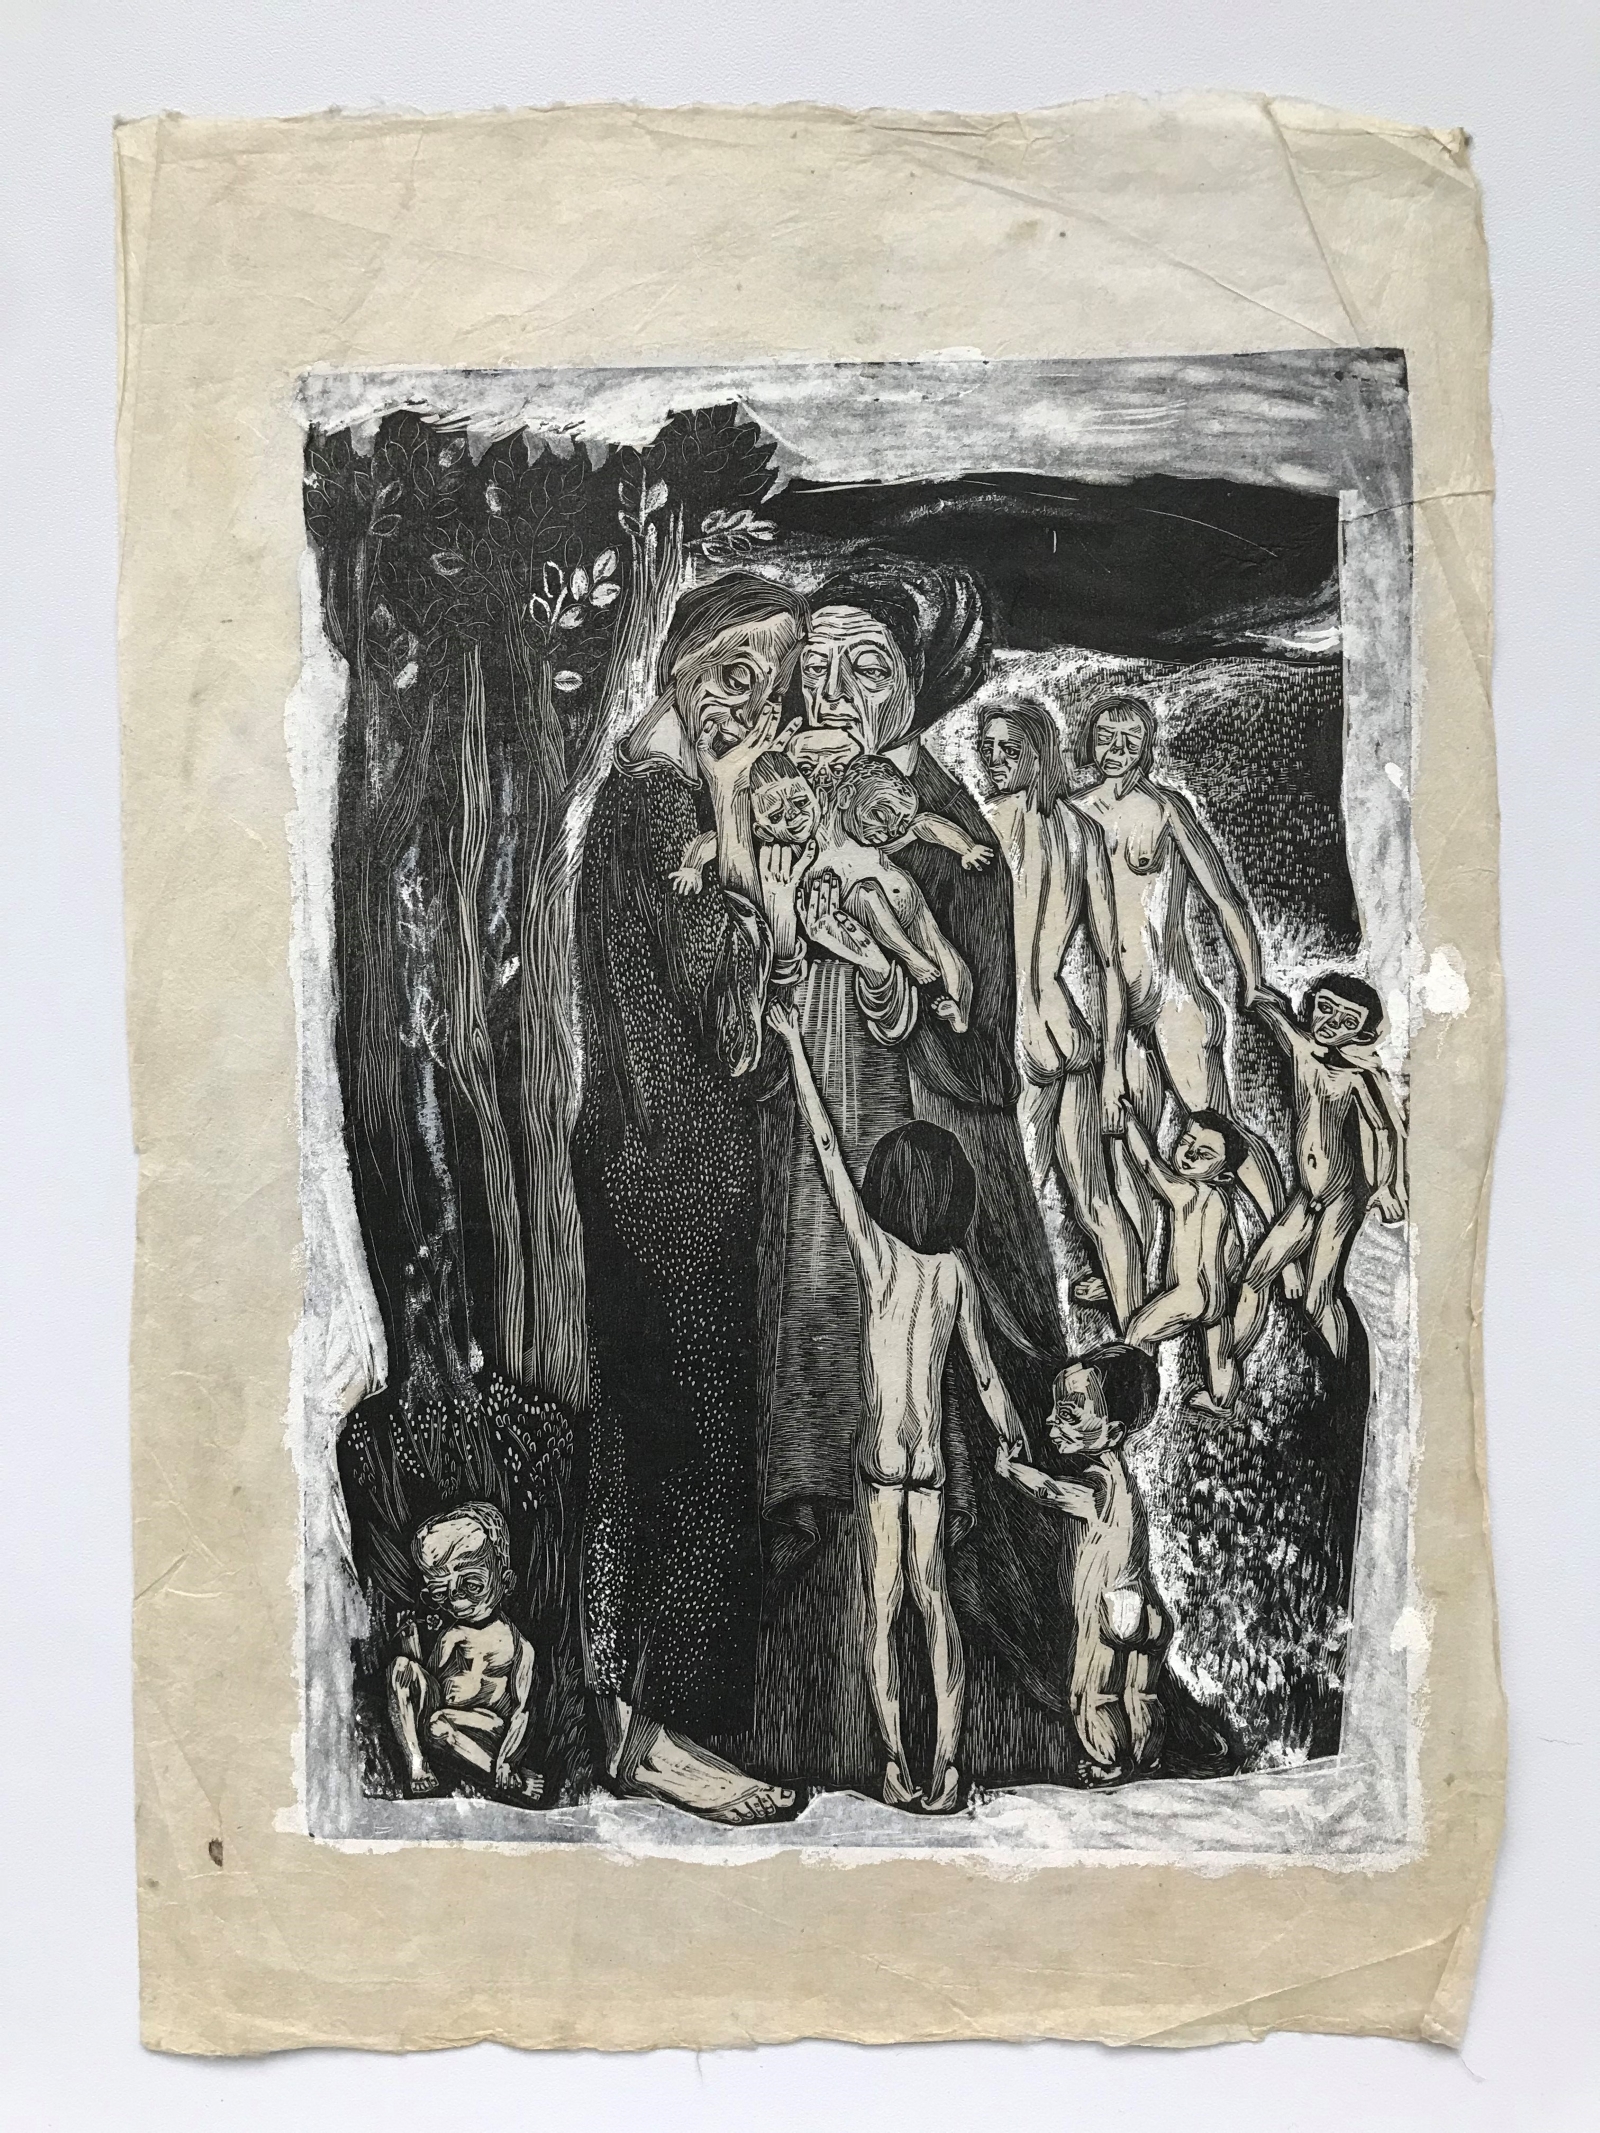 Praca Olgi Siemaszko - na czarnym tle, przy drzewie stoją wychudzone postacie starców, dorosłych i dzieci.